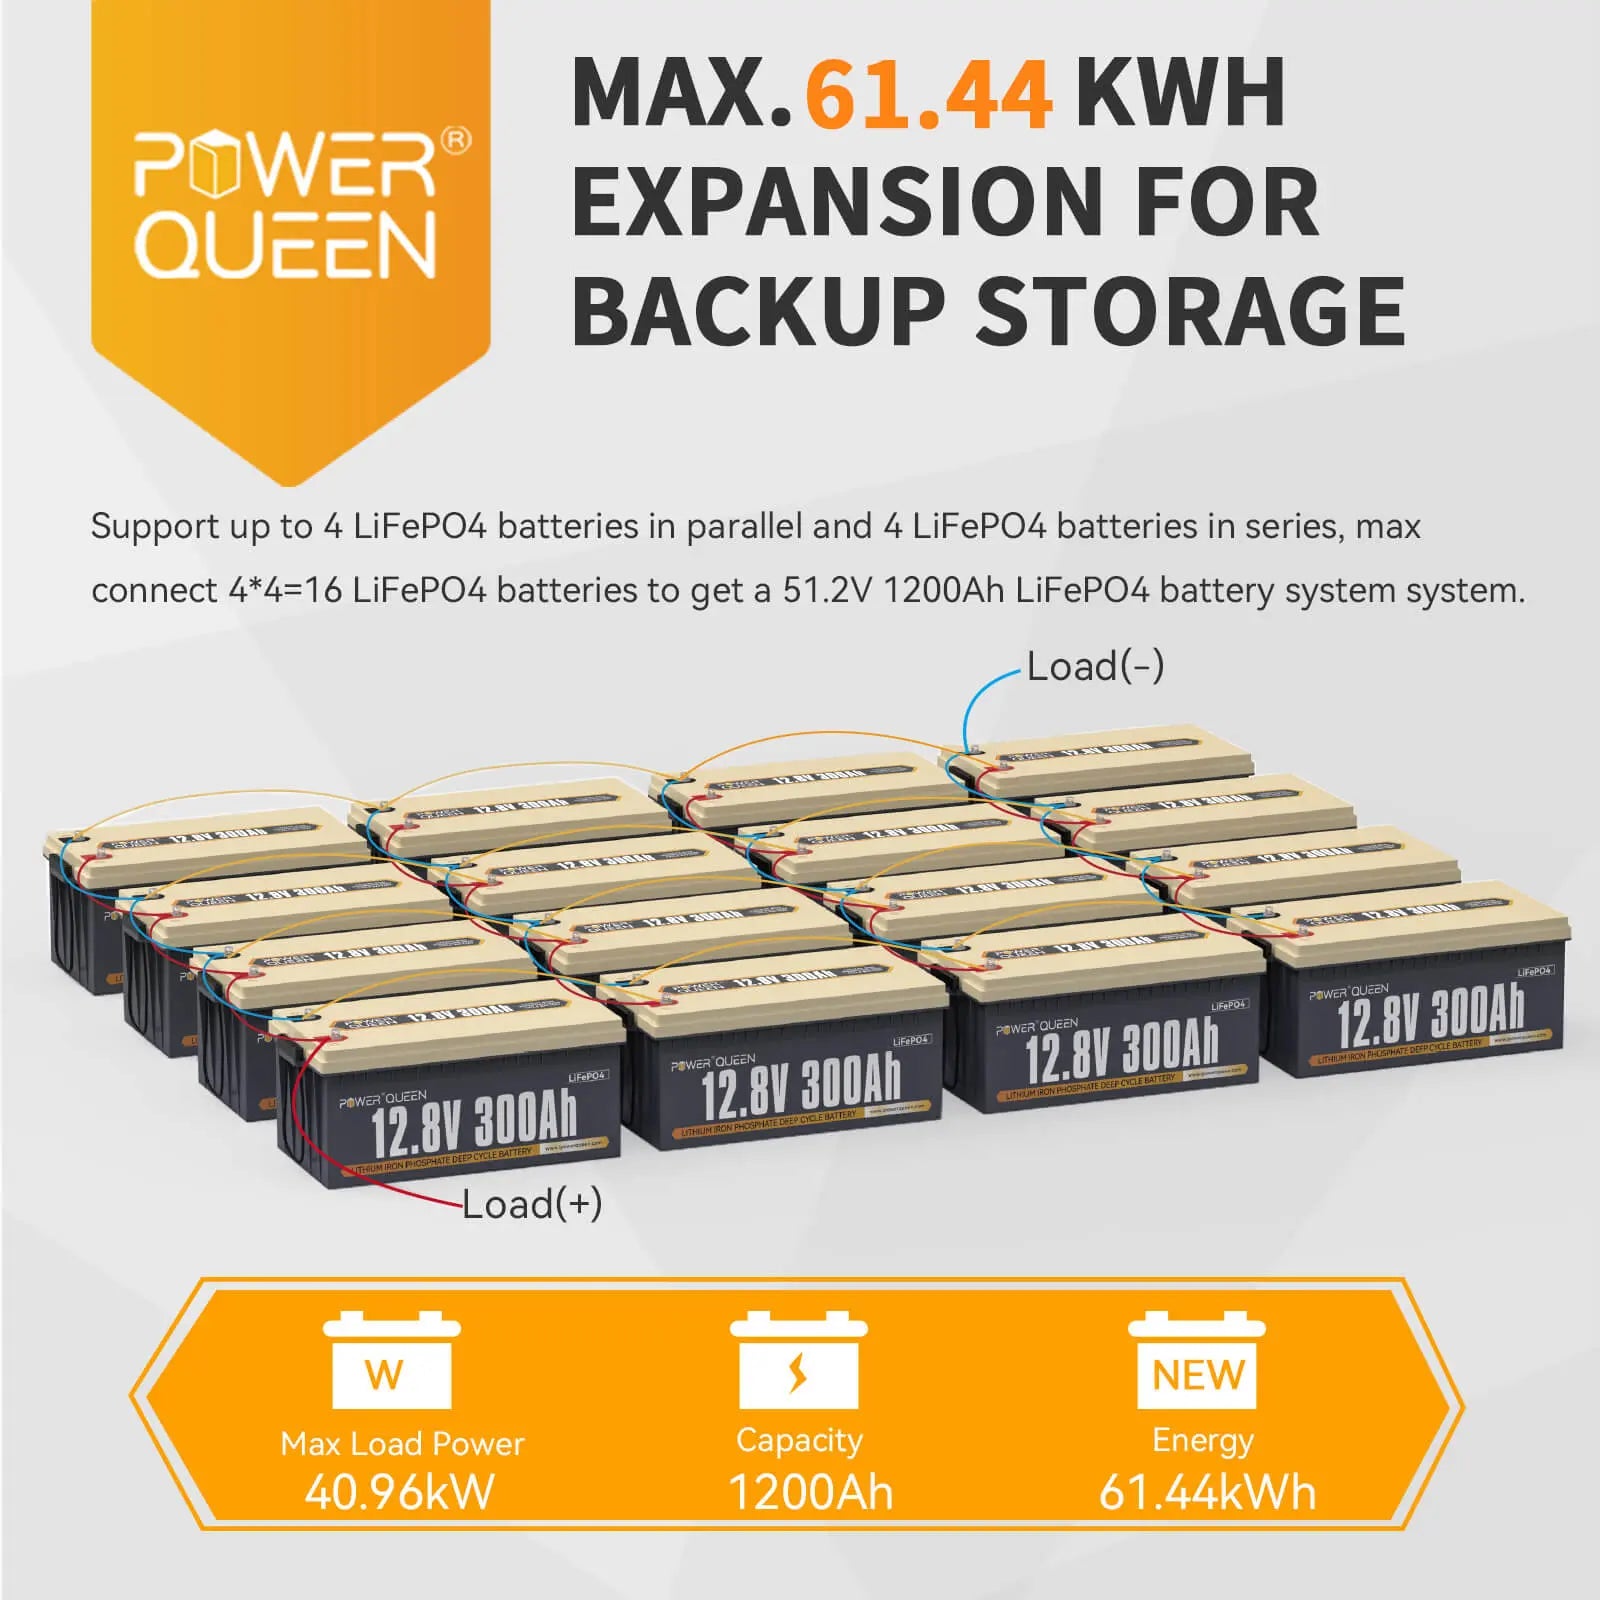 Power Queen 12.8V 300Ah LiFePO4 Battery, Built-in 200A BMS Power Queen